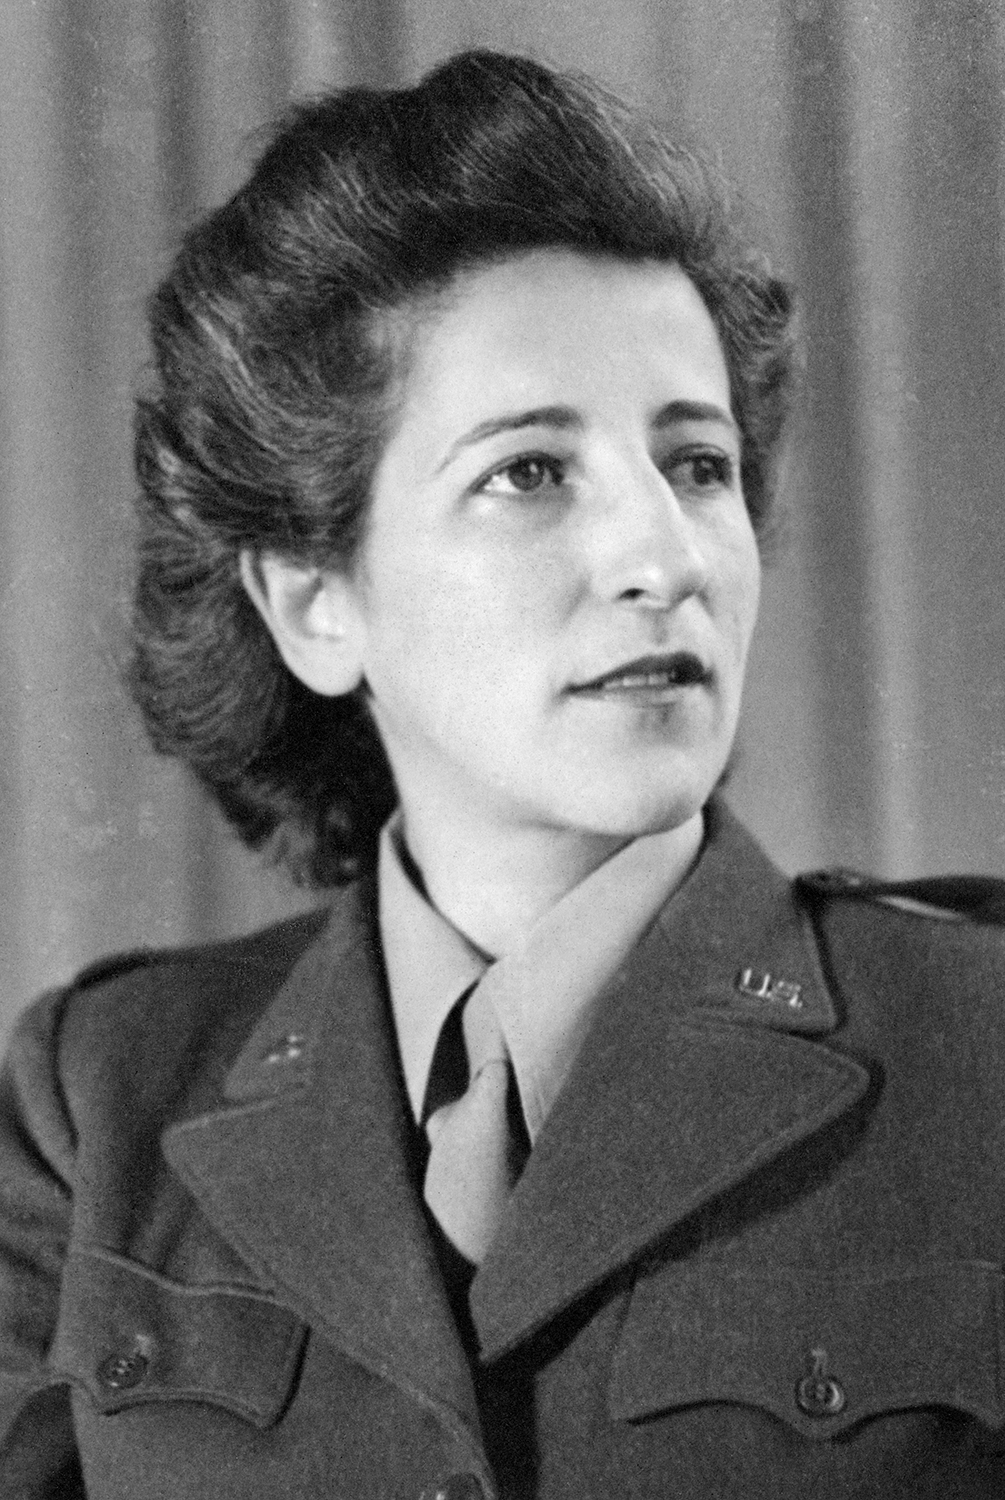 Esther Schwartzstein during WWII